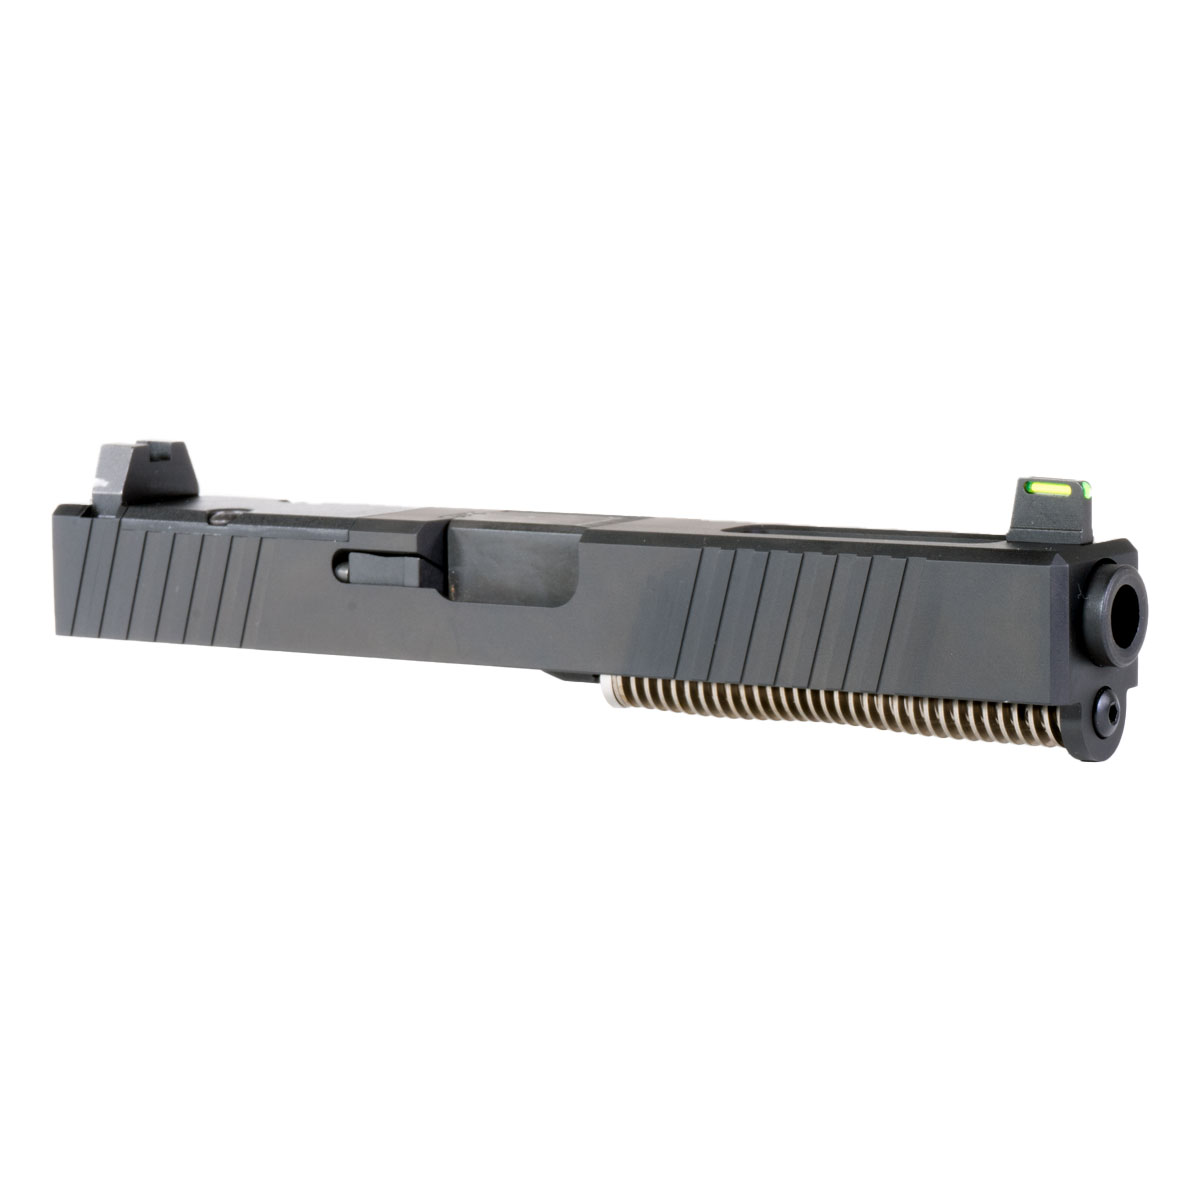 DD 'Hornwright' 9mm Complete Slide Kit - Glock 17 Gen 1-3 Compatible